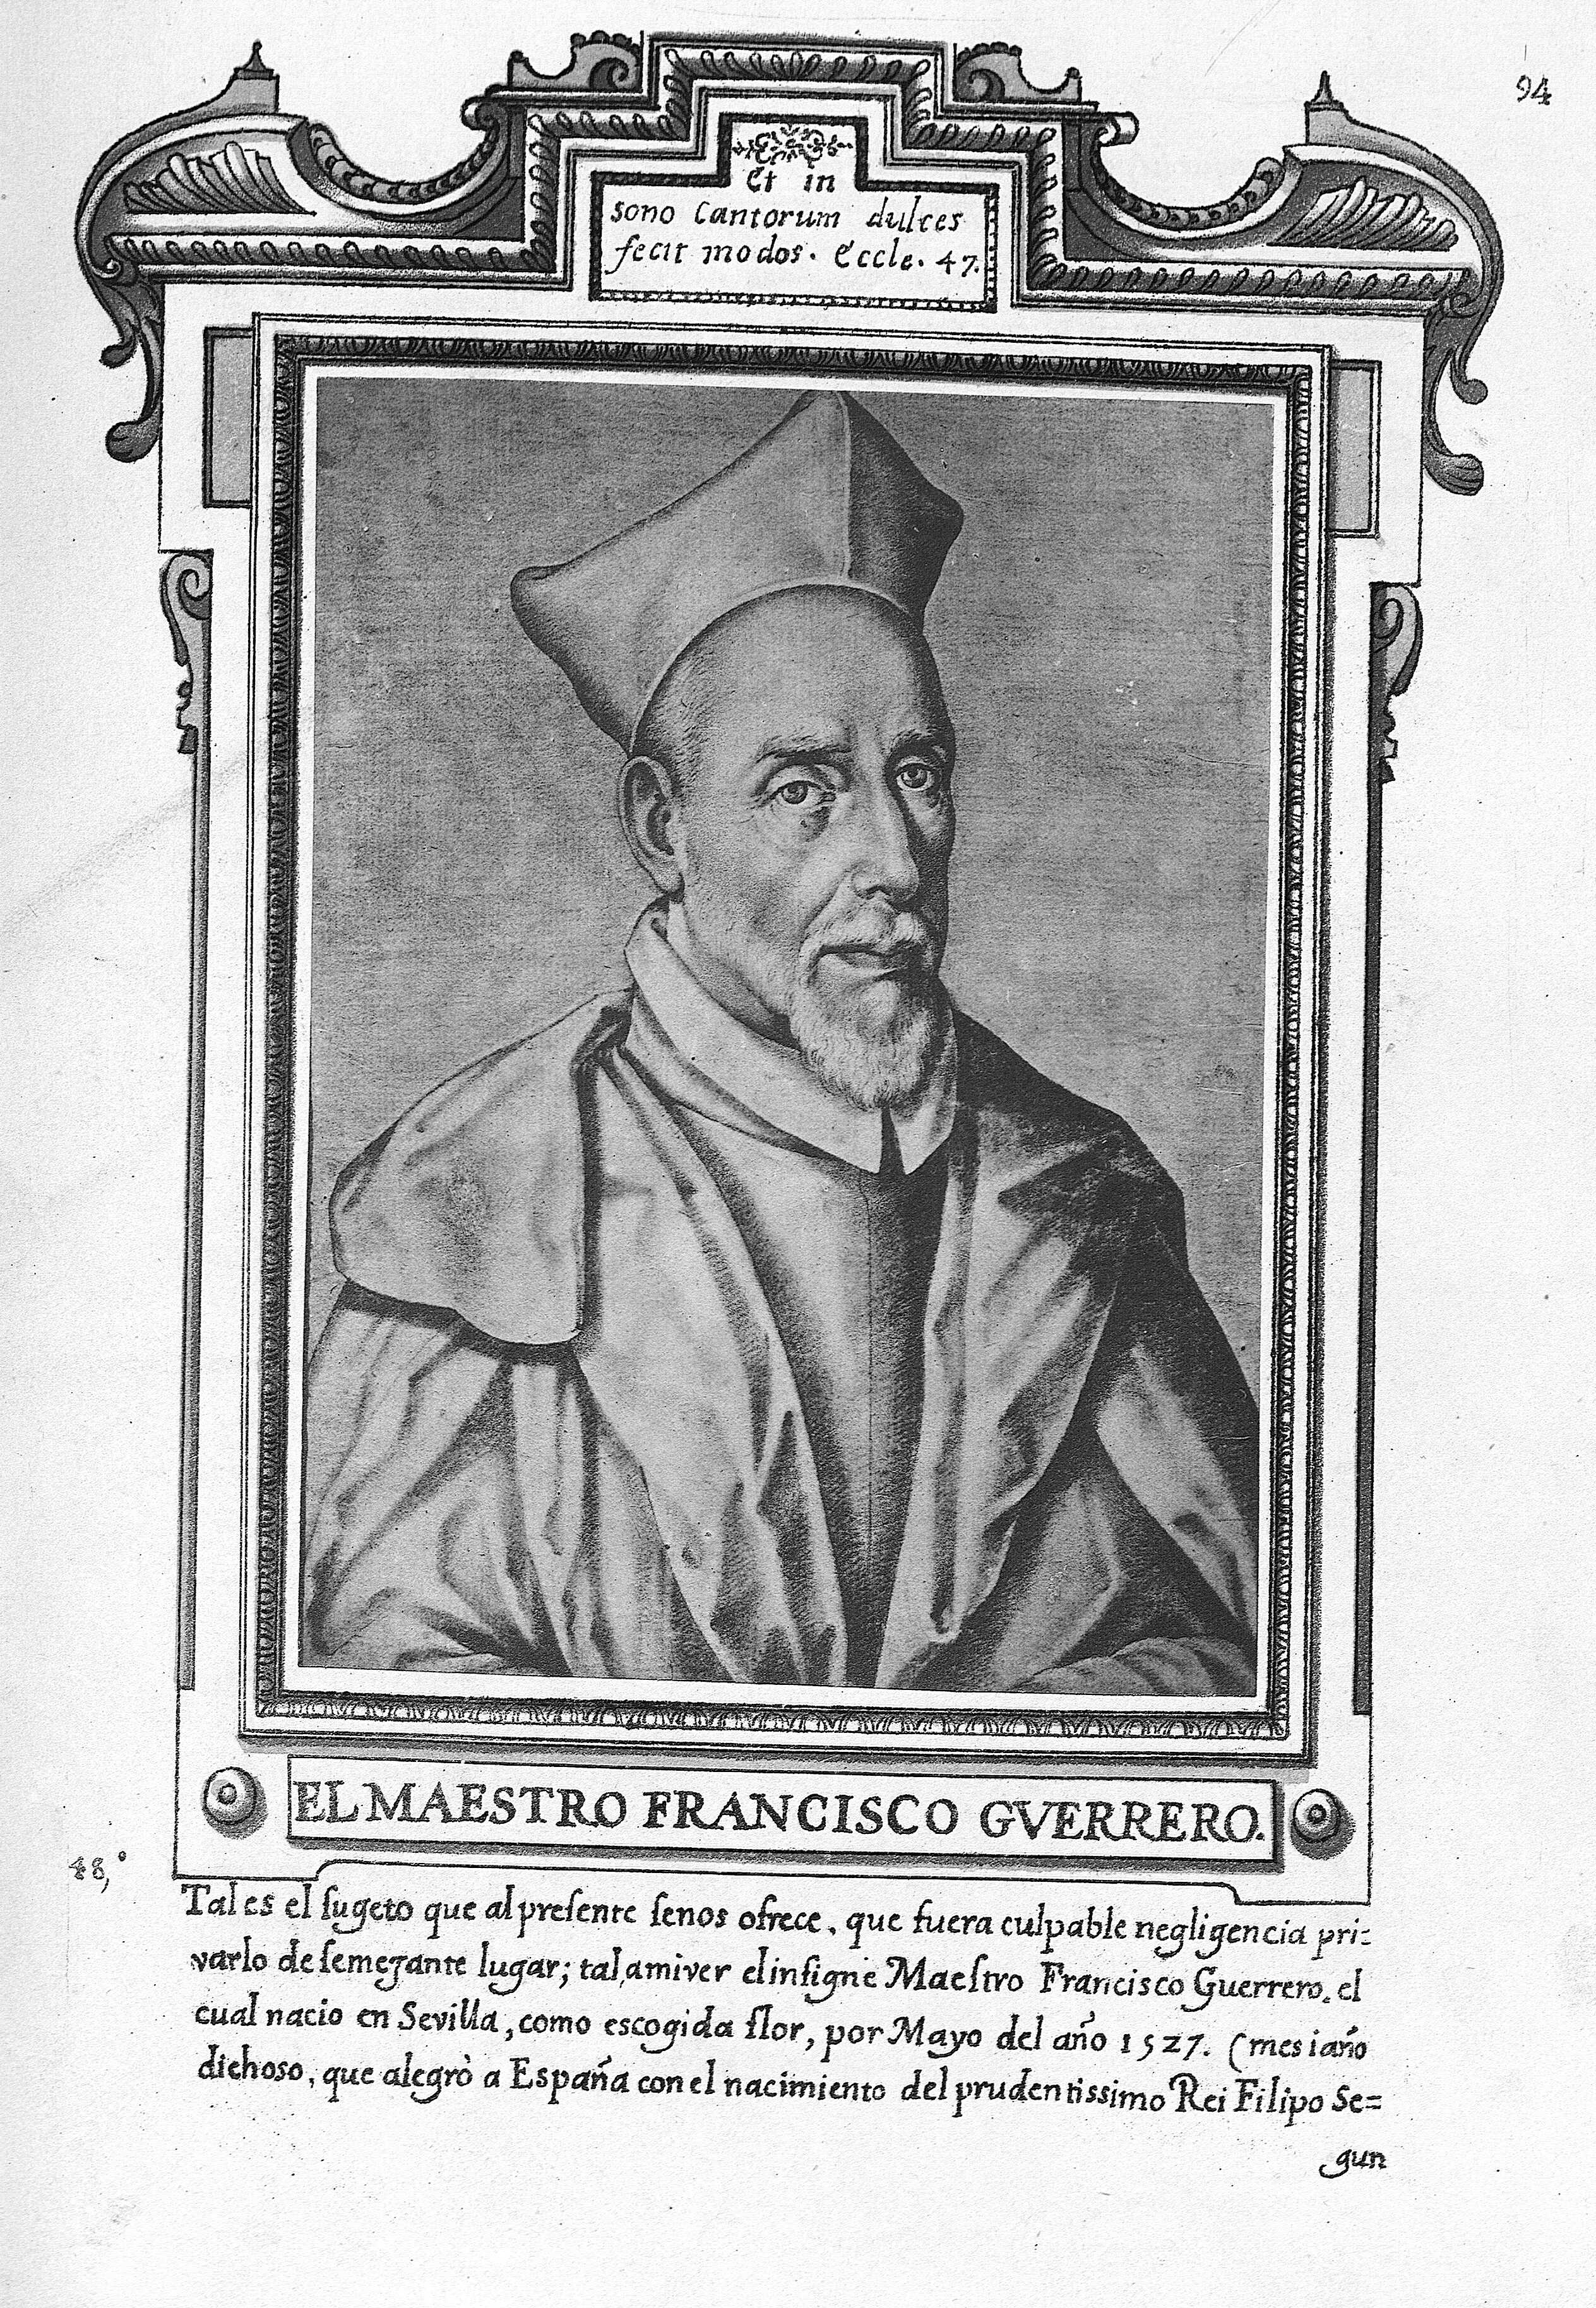 El Maestro Francisco Gverrero